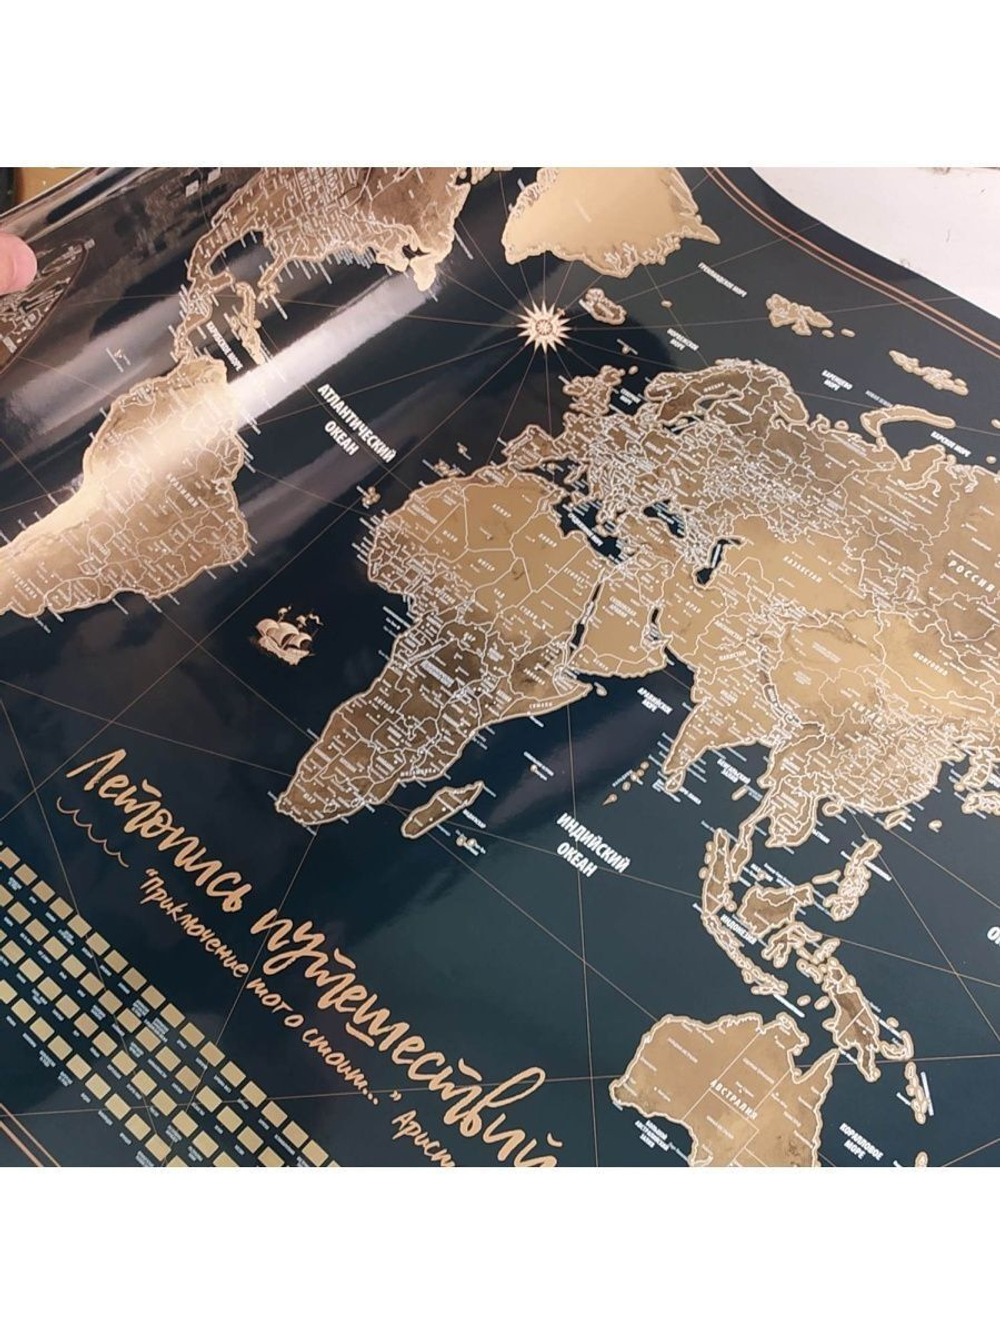 Скретч карта мира "Летопись Путешествий" на стену 96х65 см